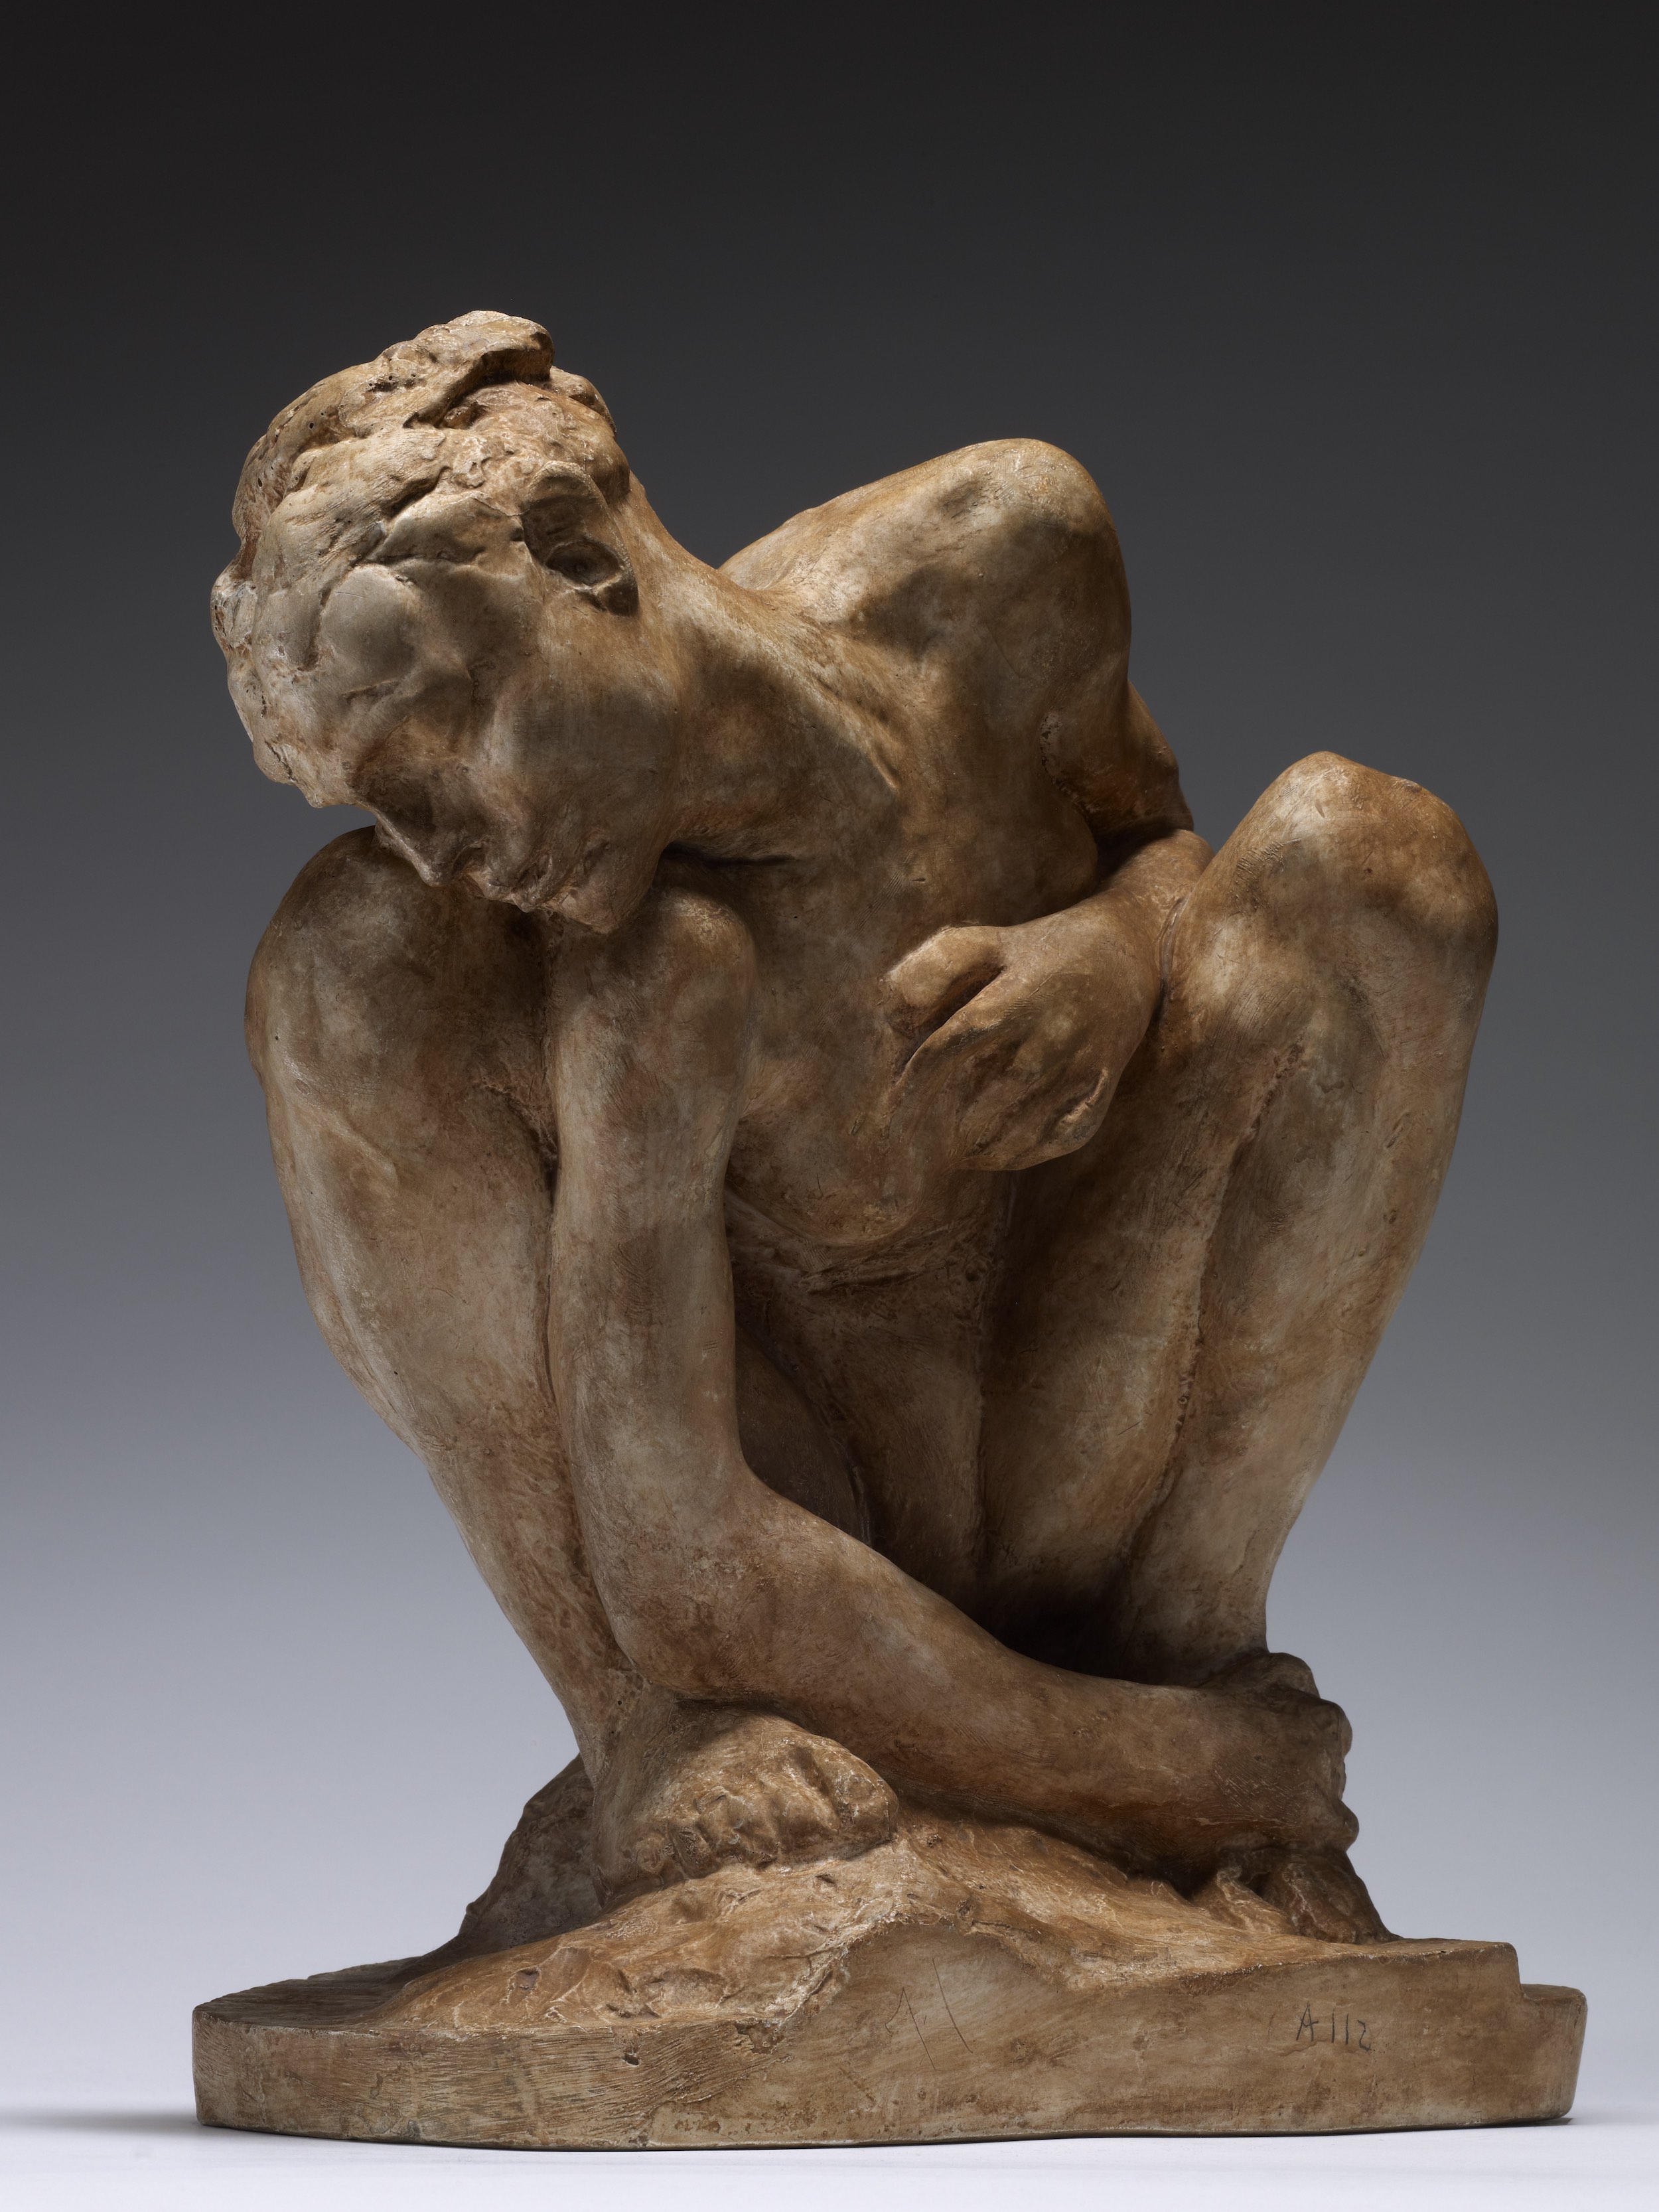 Guggoló nő by Auguste Rodin - 1882 